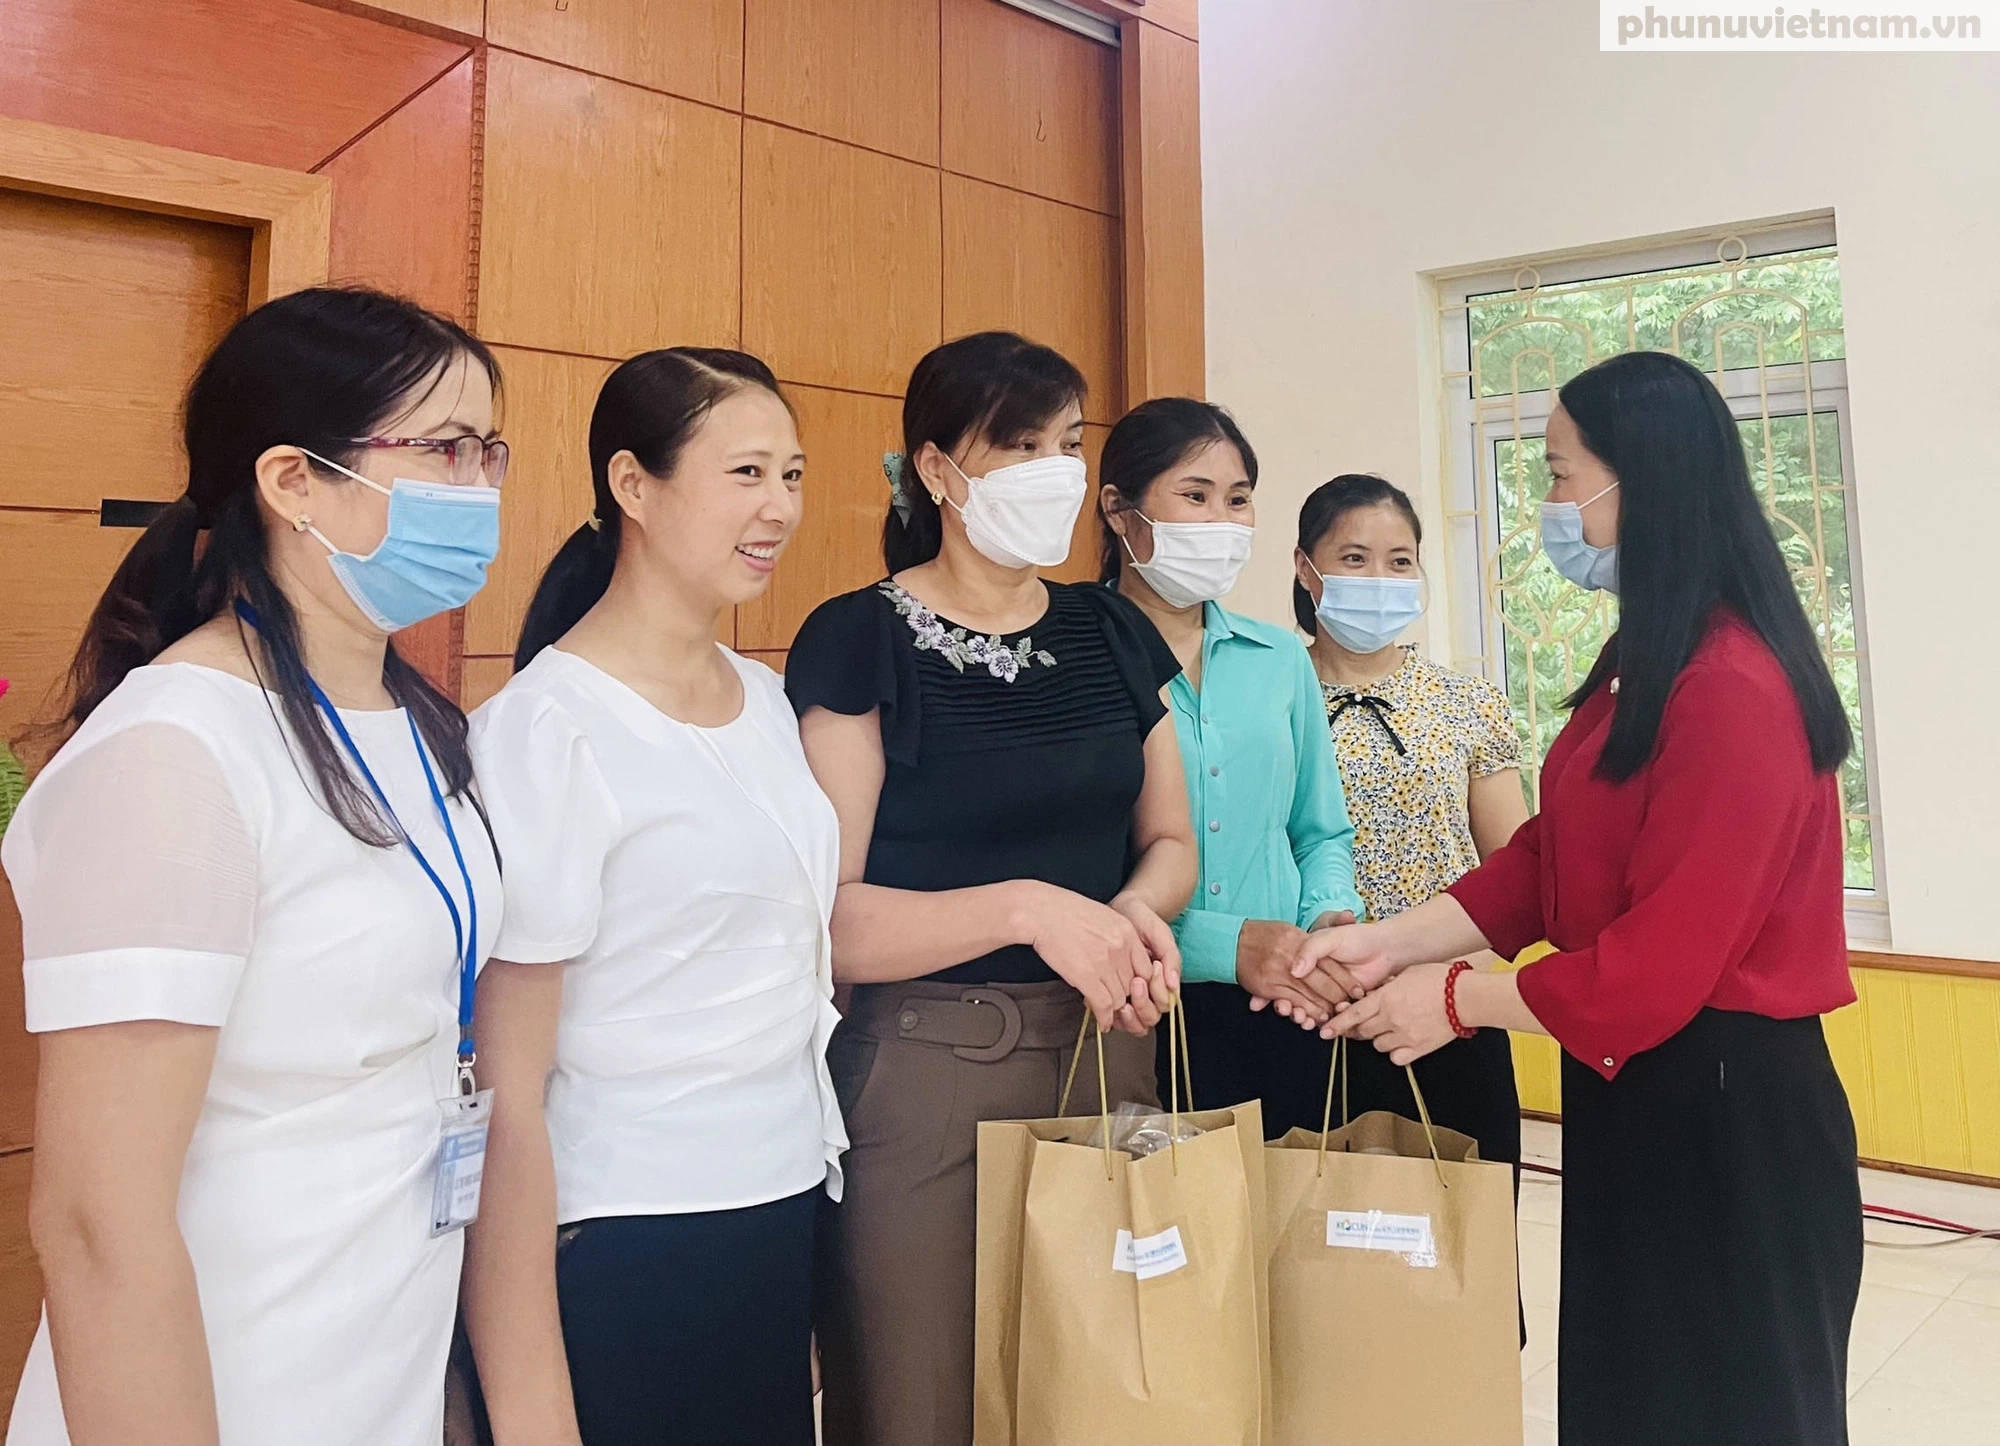 Hải Phòng: Giao ban với các ngành chức năng huyện Kiến Thụy về hỗ trợ phụ nữ di cư hồi hương - Ảnh 2.